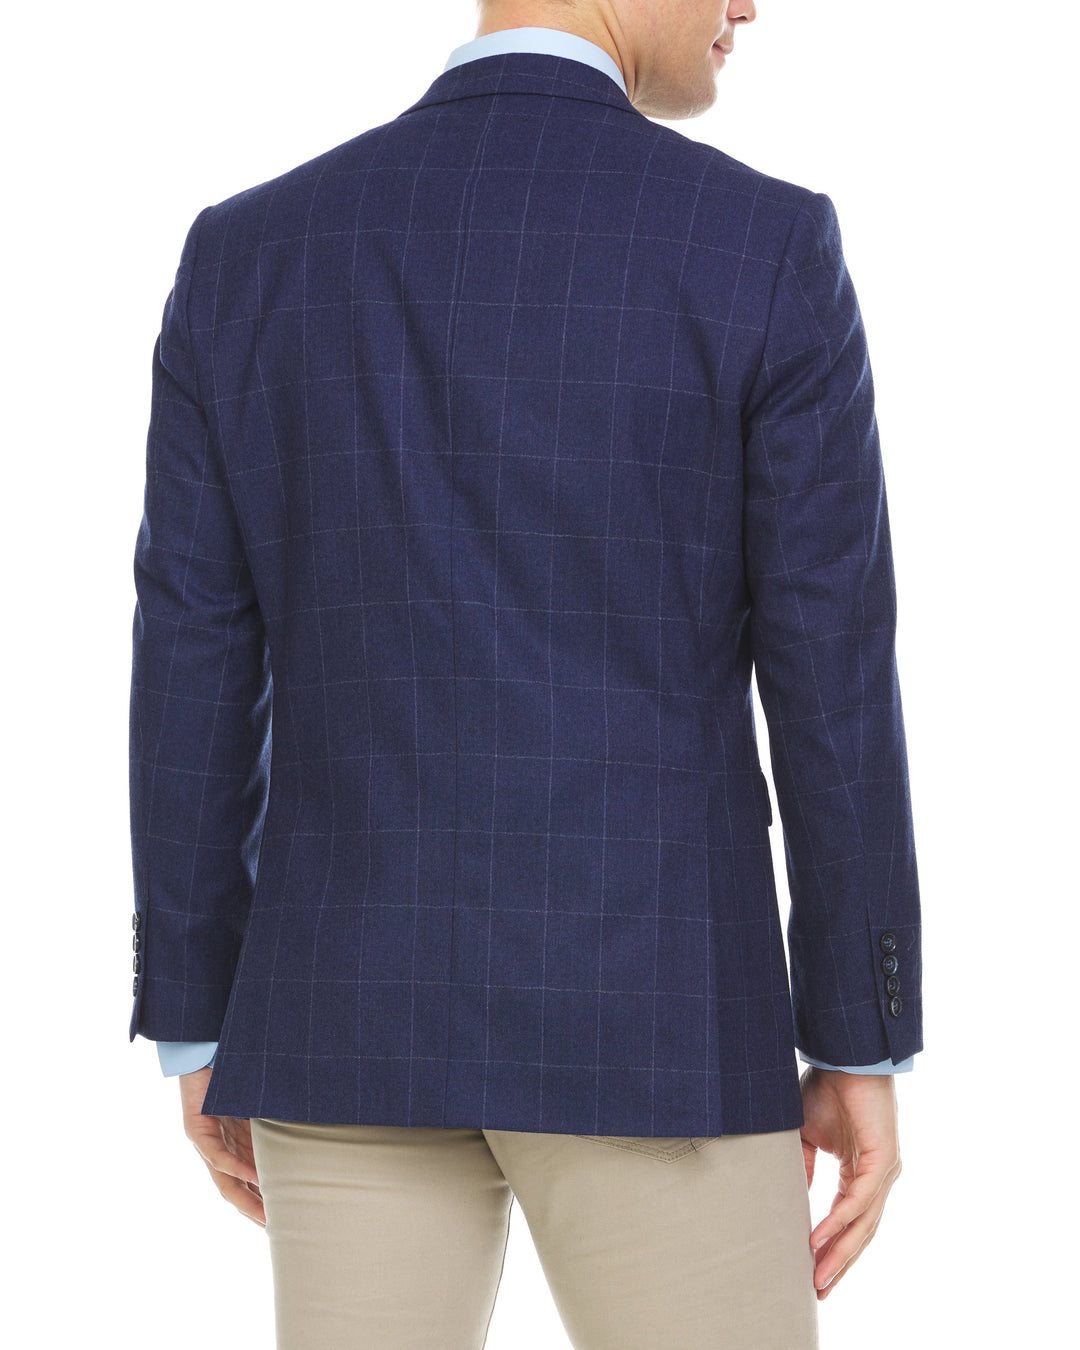 Adam Baker Men's Single Breasted 100% Wool Ultra Slim Fit Blazer/Sport Coat -Navy Windowpane